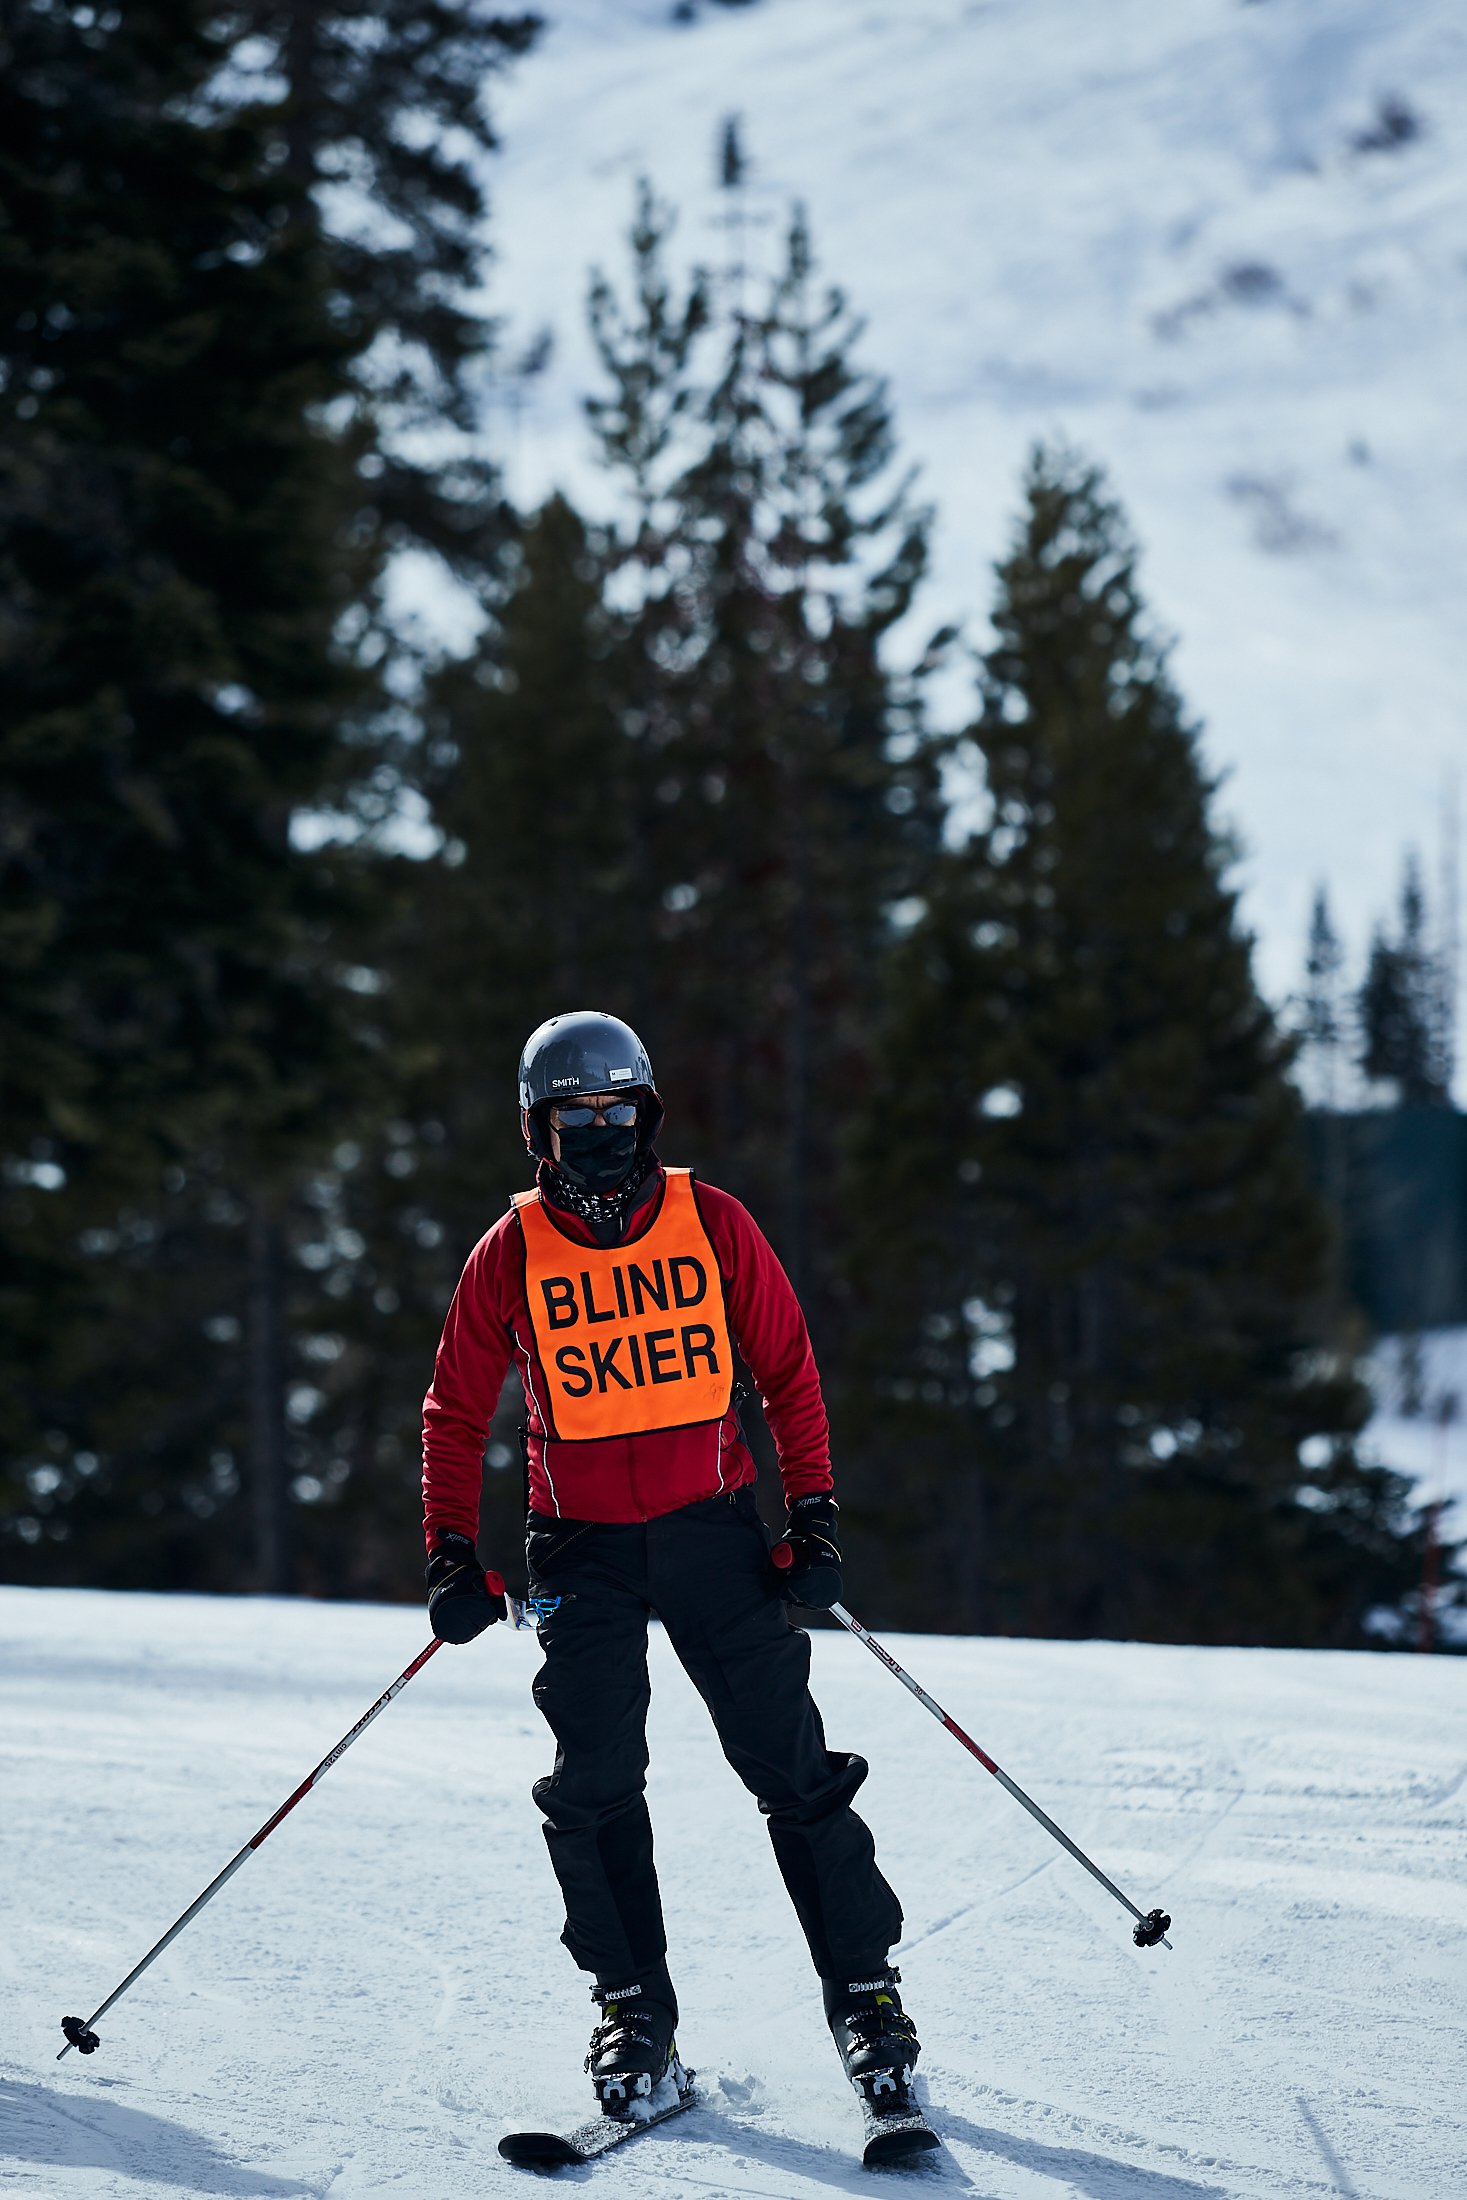 Walt Raineri, wearing a longsleeve red top, black ski pants, and a blind skier vest, skis in Lake Tahoe.